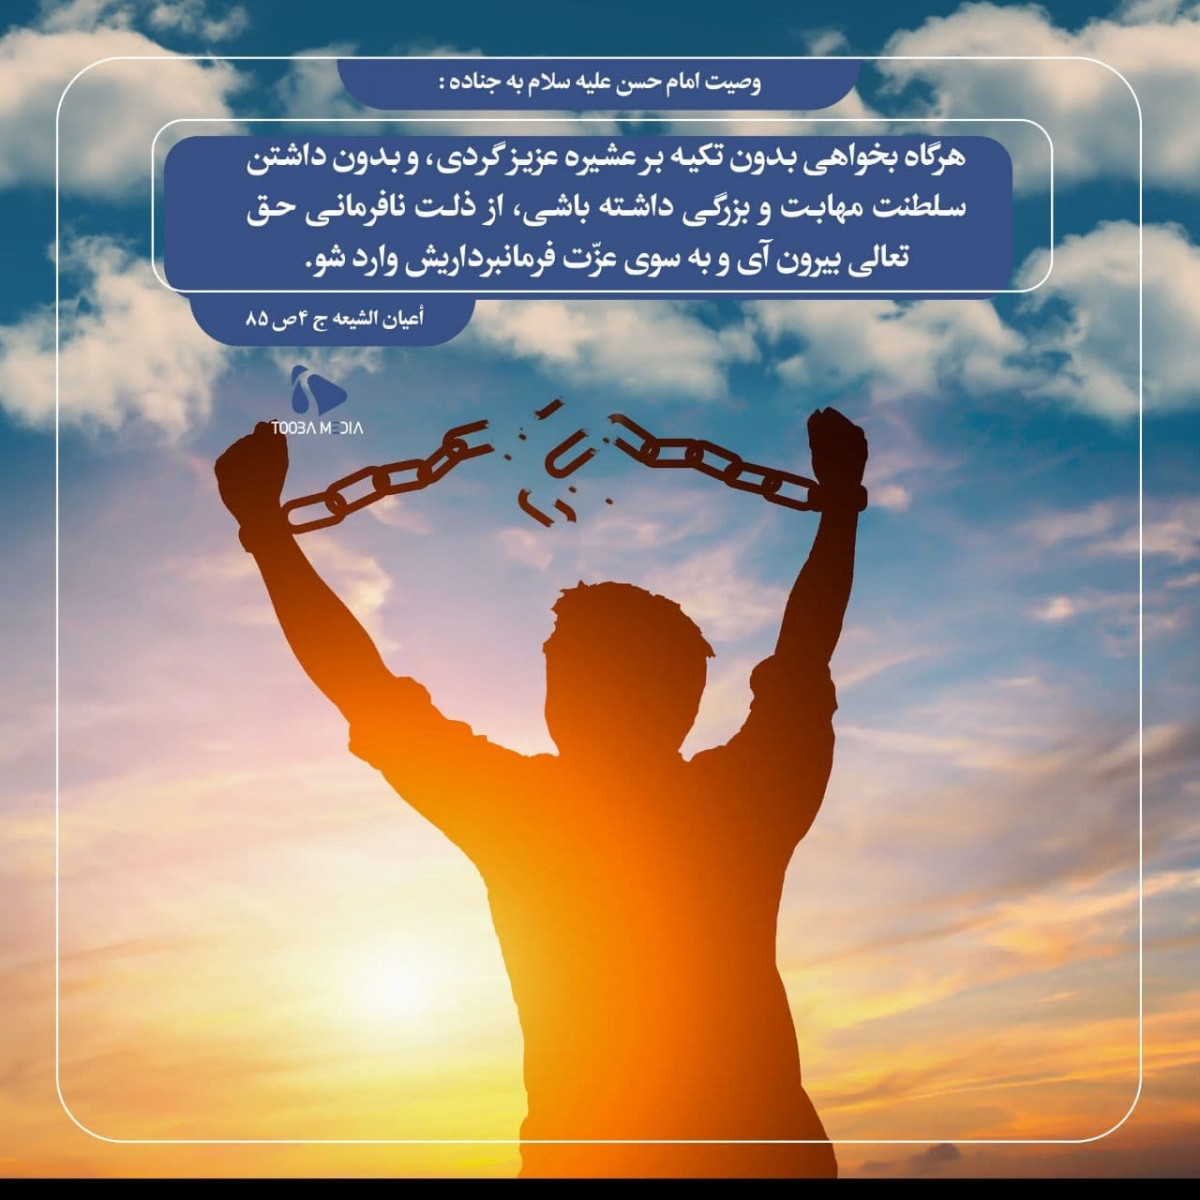 وصیت امام حسن مجتبی علیه السلام به جناده